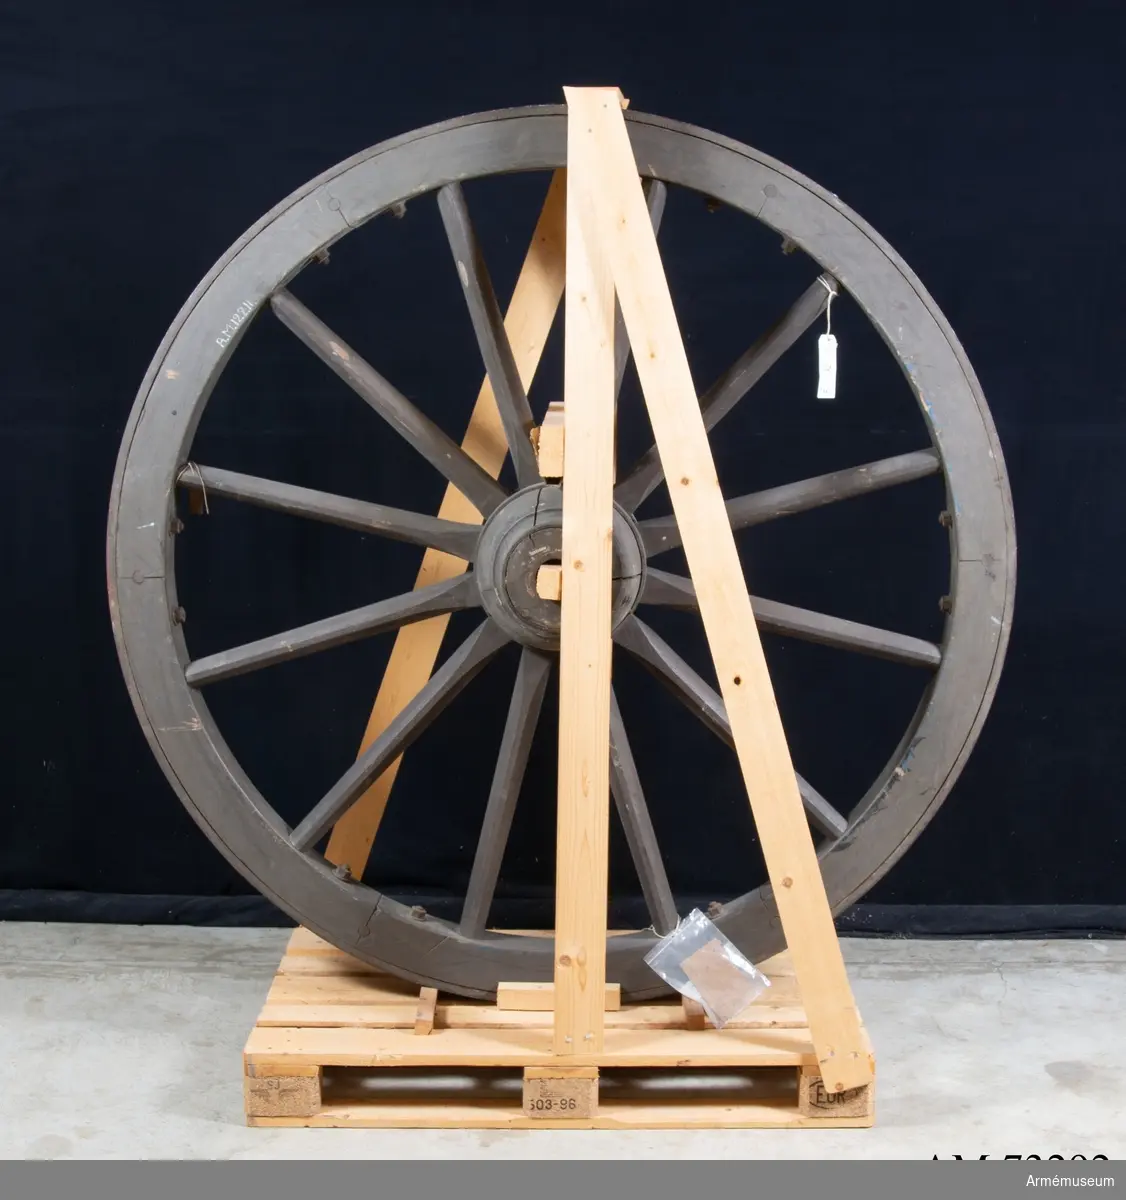 Grupp F.III.
Hjul till 12 cm kan m/1879, hjul i reserv. 178x85.